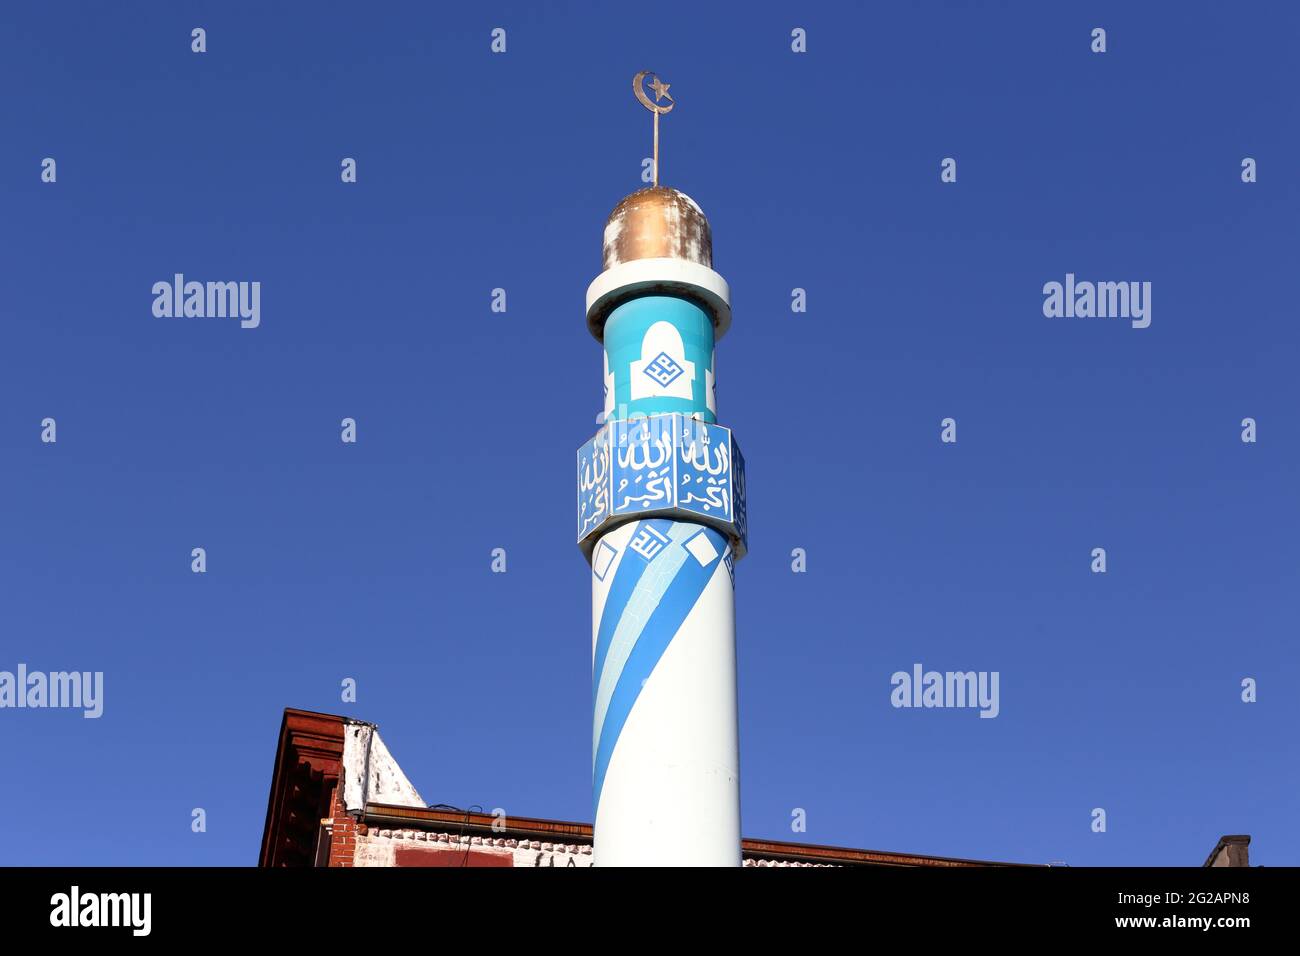 Una media luna y un alem estrella adornan la cima de un minarete en la mezquita Madina Masjid en el barrio East Village de Manhattan en la ciudad de Nueva York. Foto de stock